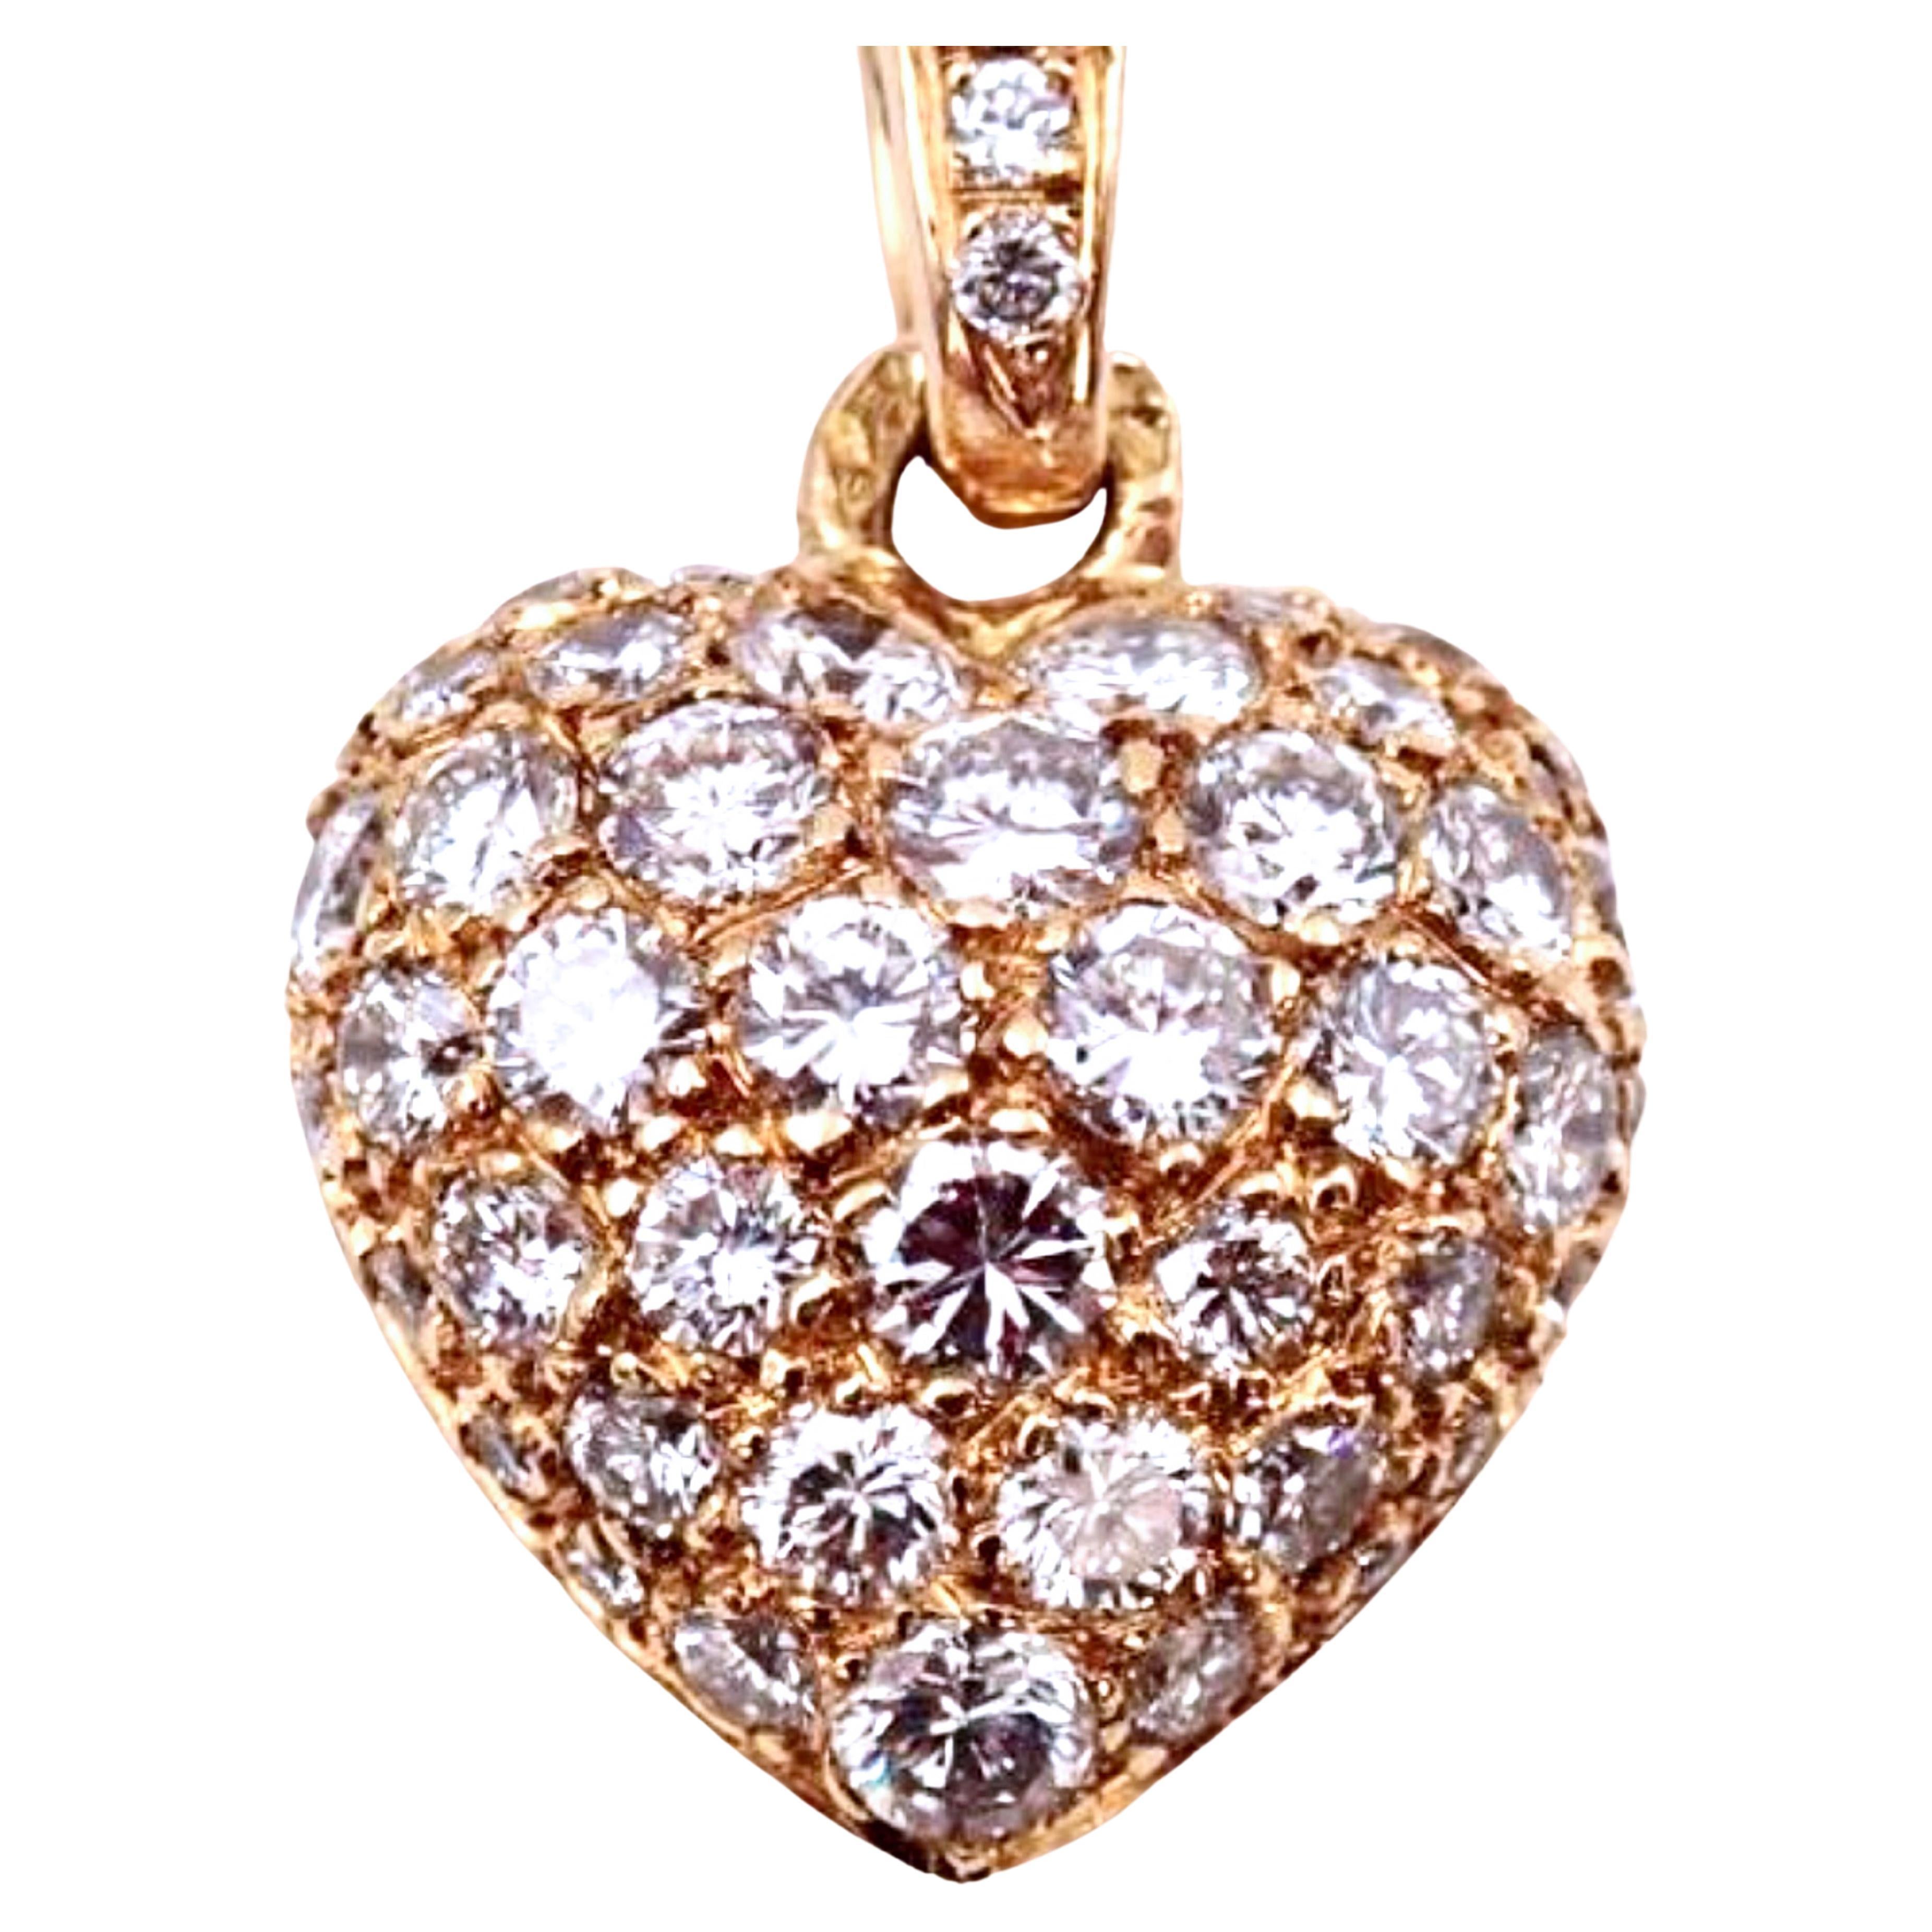 Original 1990, pendentif et collier c�œur en or jaune 18Kt et diamant blanc de Cartier  18,11 pouces (46 cm).
Un très précieux et emblématique diamant blanc de qualité supérieure de Cartier, d'environ 1,44 carat, monté sur une simple chaîne en or